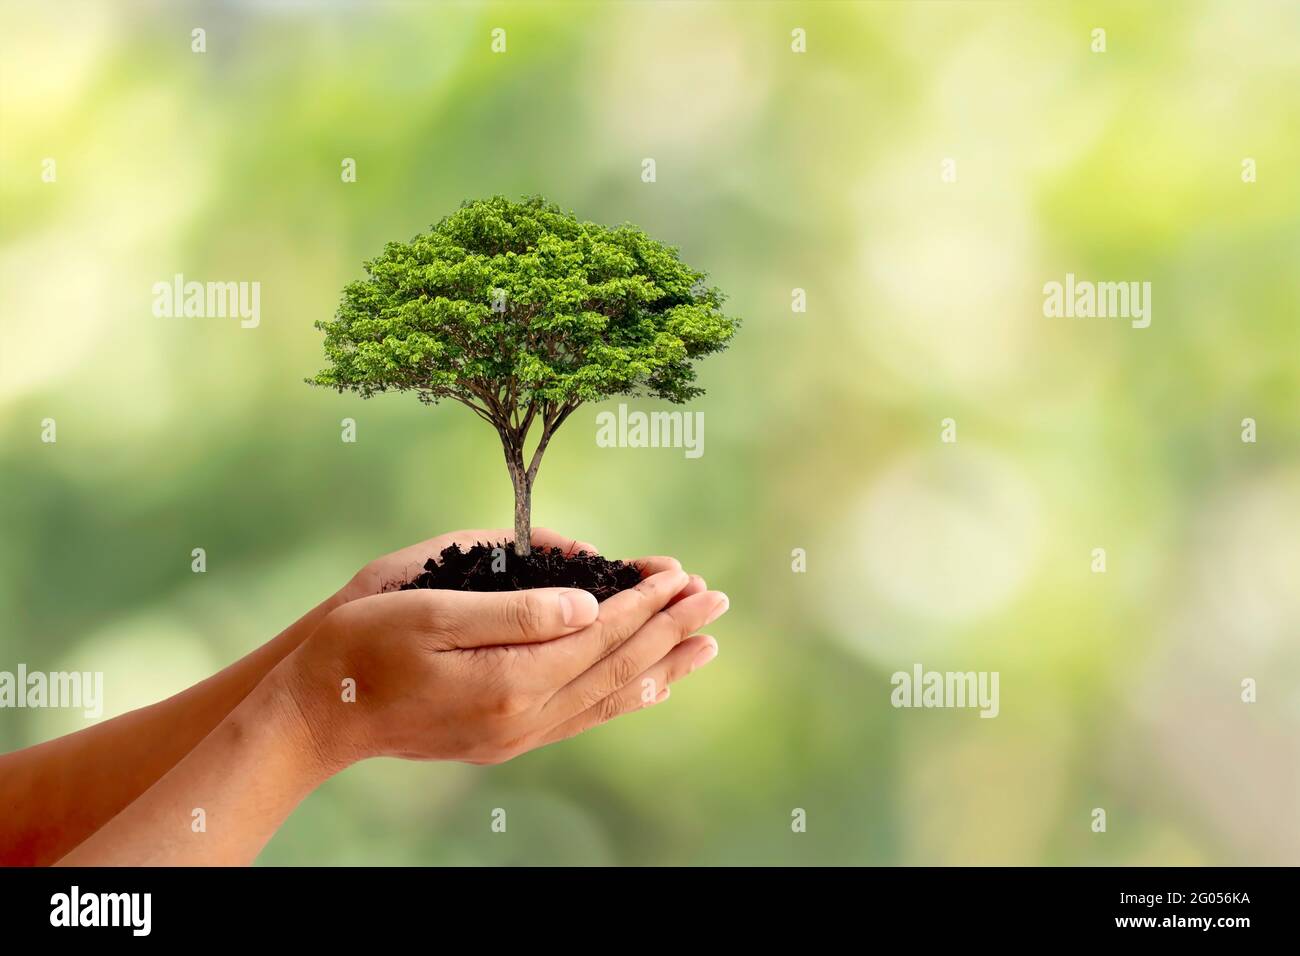 Gli alberi sono piantati a terra in mani umane con sfondi verdi naturali, il concetto di crescita delle piante e la protezione ambientale. Foto Stock